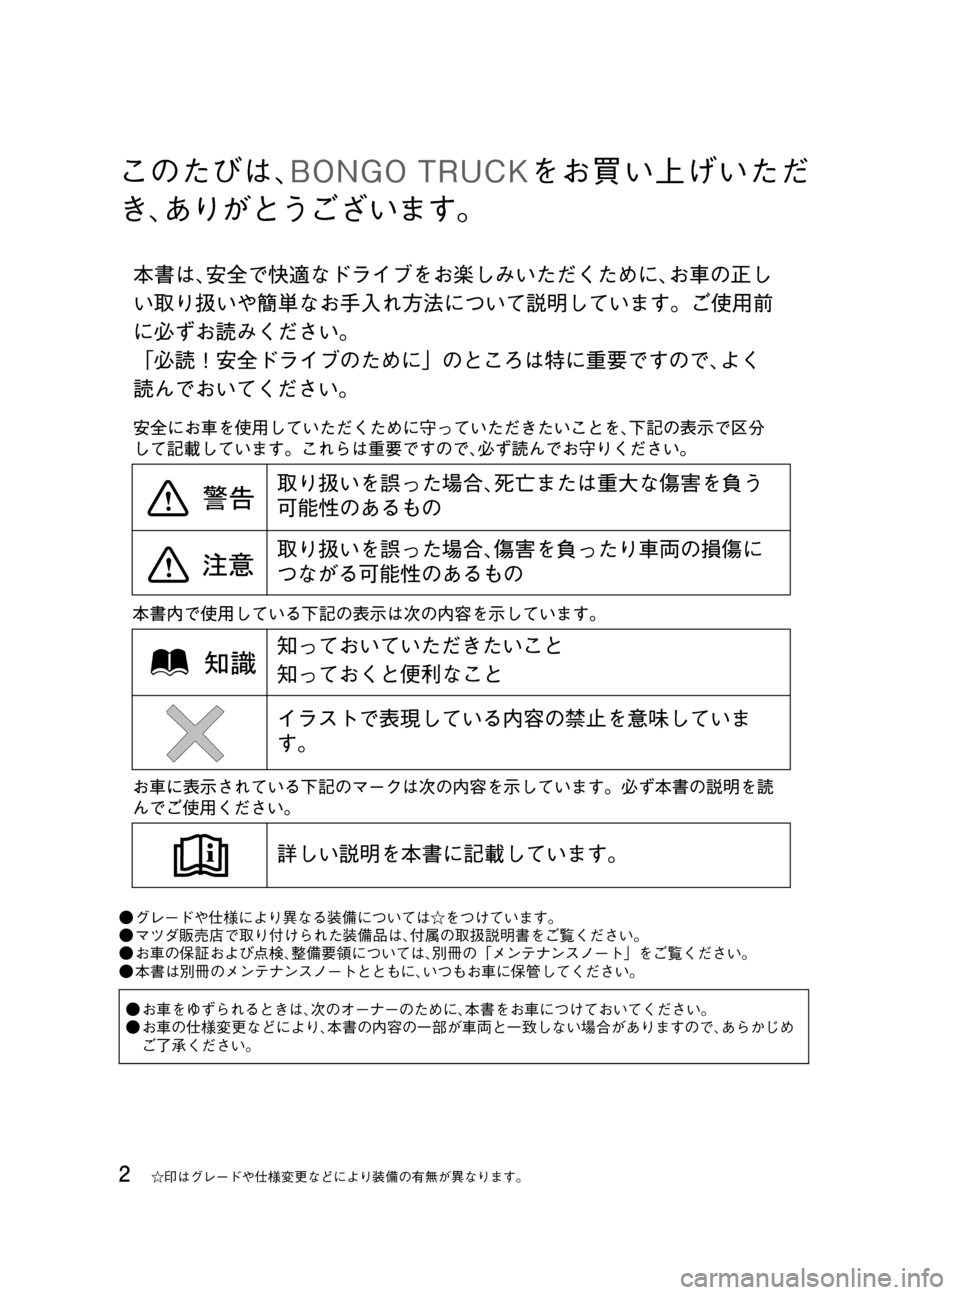 MAZDA MODEL BONGO TRACK 2016  取扱説明書 (in Japanese) Black plate (2,1)
このたびは､BONGO TRUCKをお買い上げいただ
き､ありがとうございます。
●グレードや仕様により異なる装備については☆をつけていま�